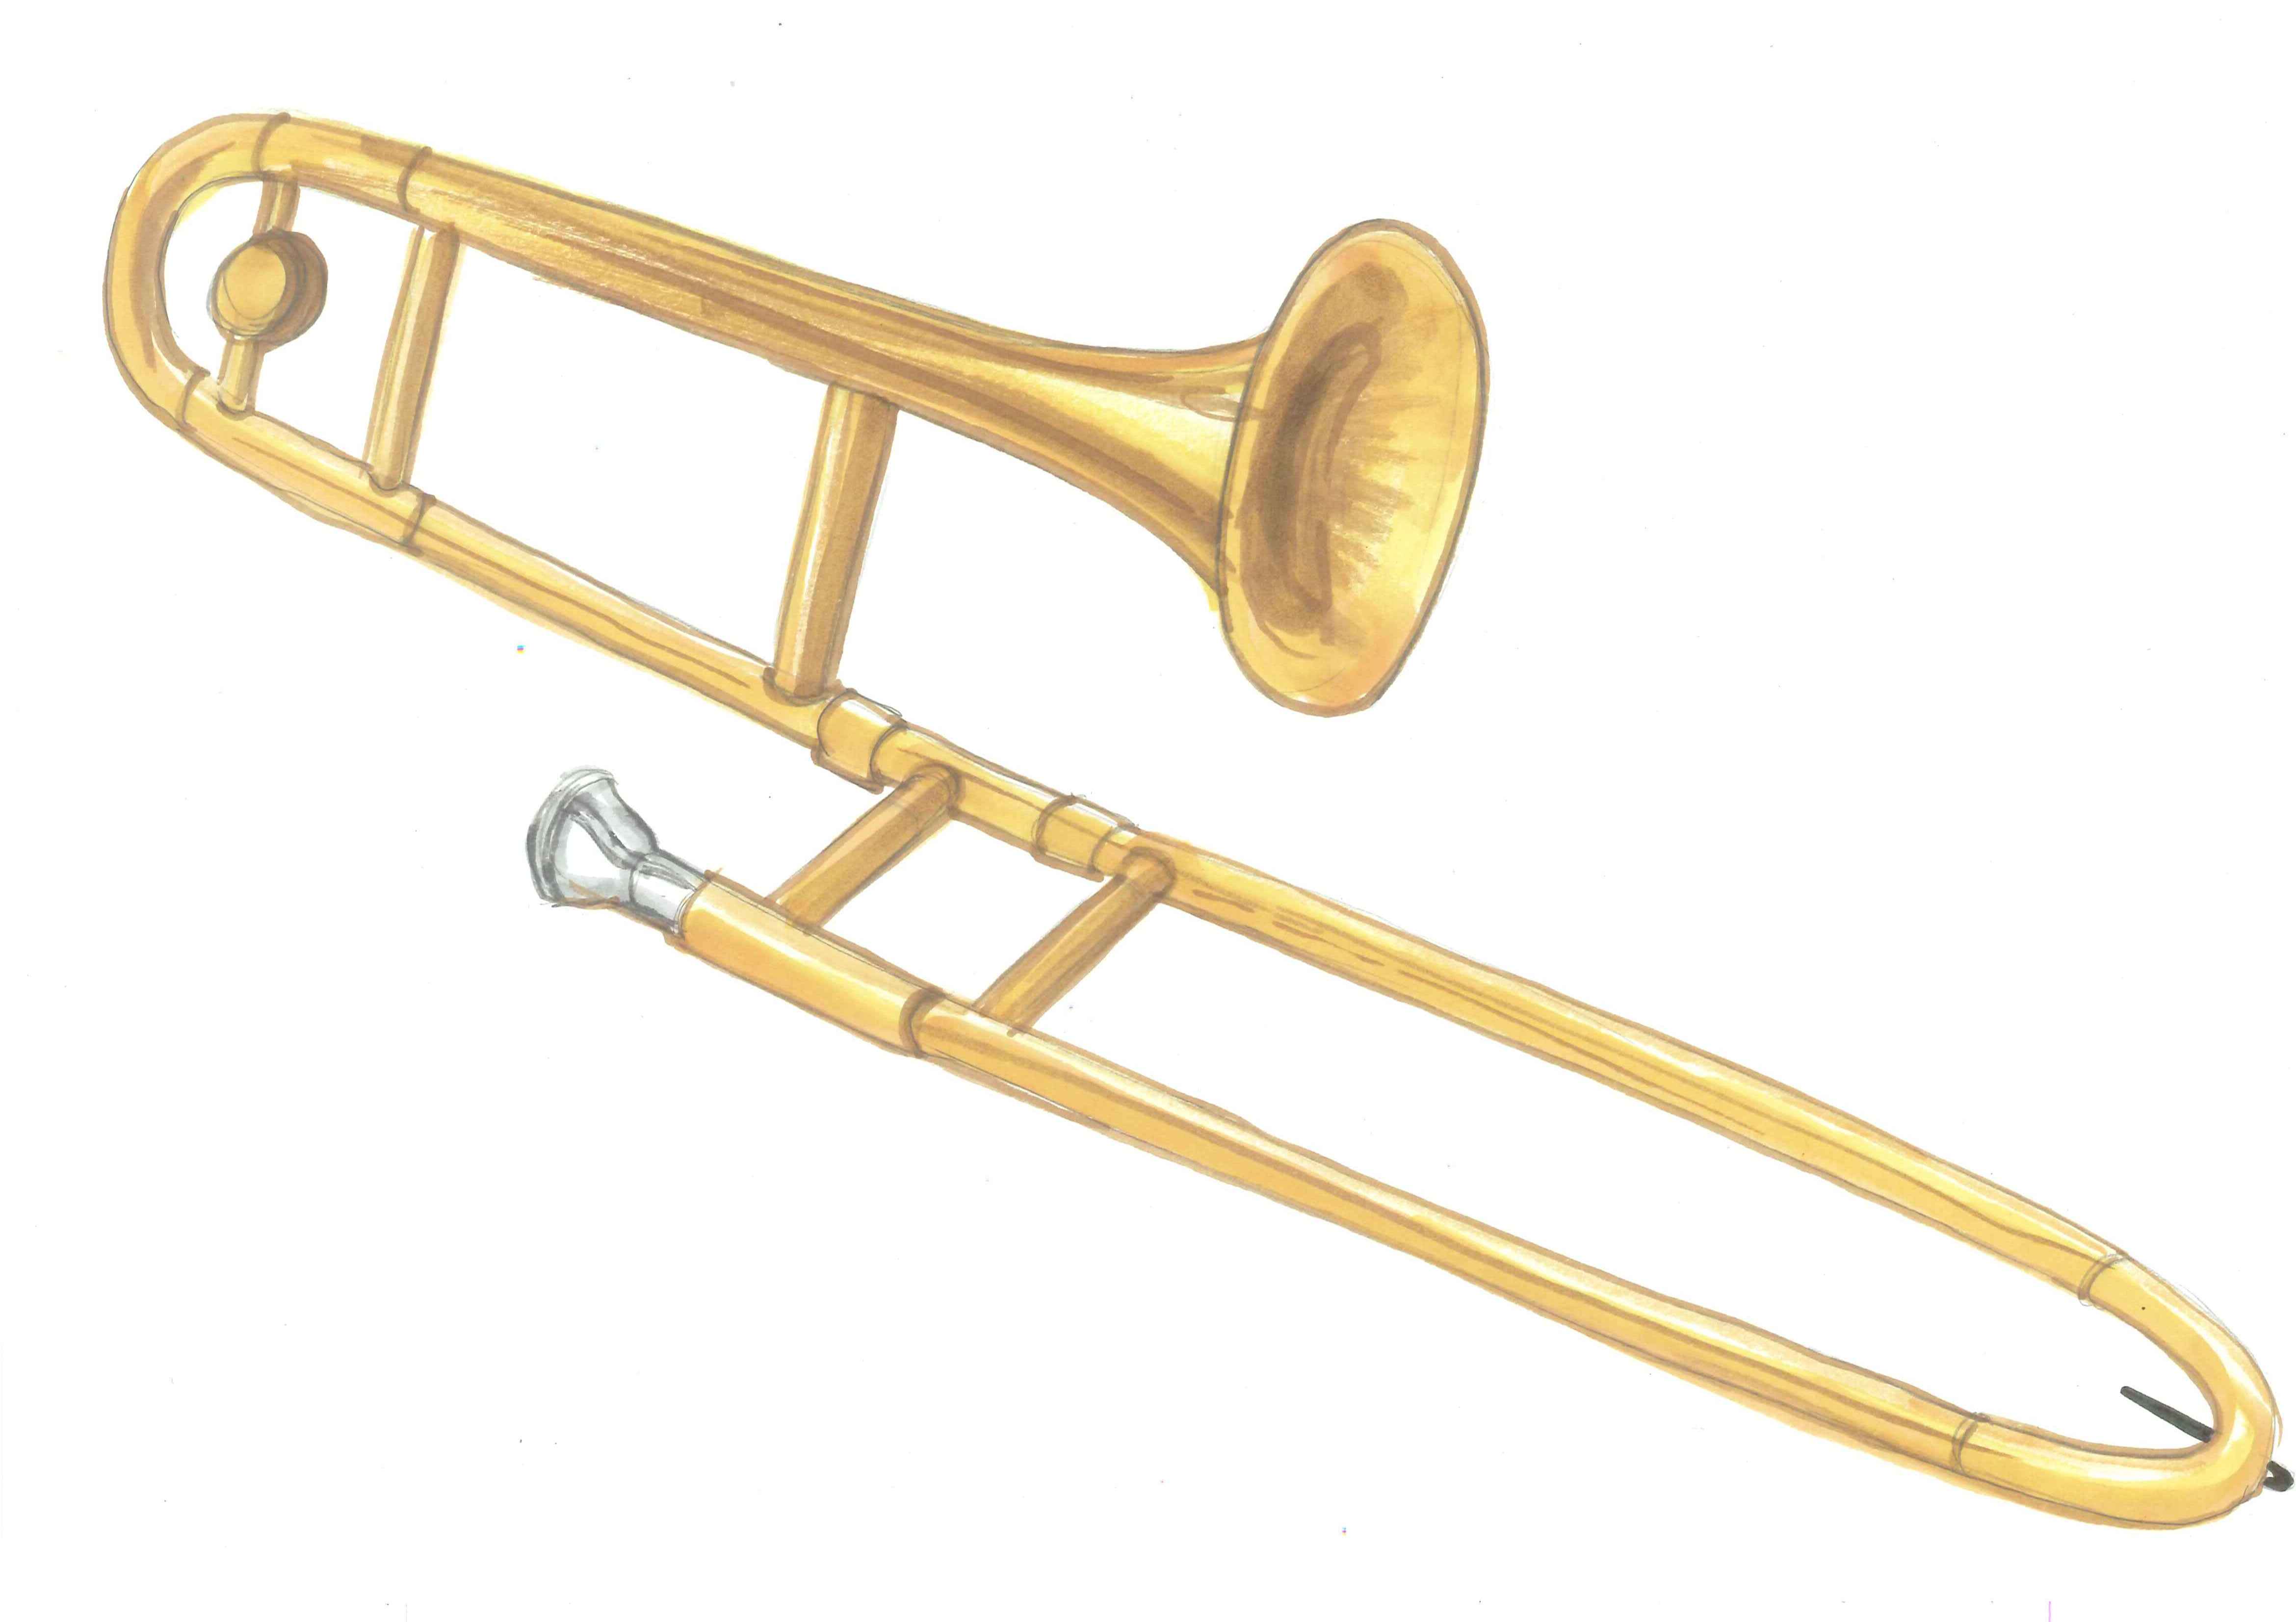 ... Picture Of Trombone - Cli